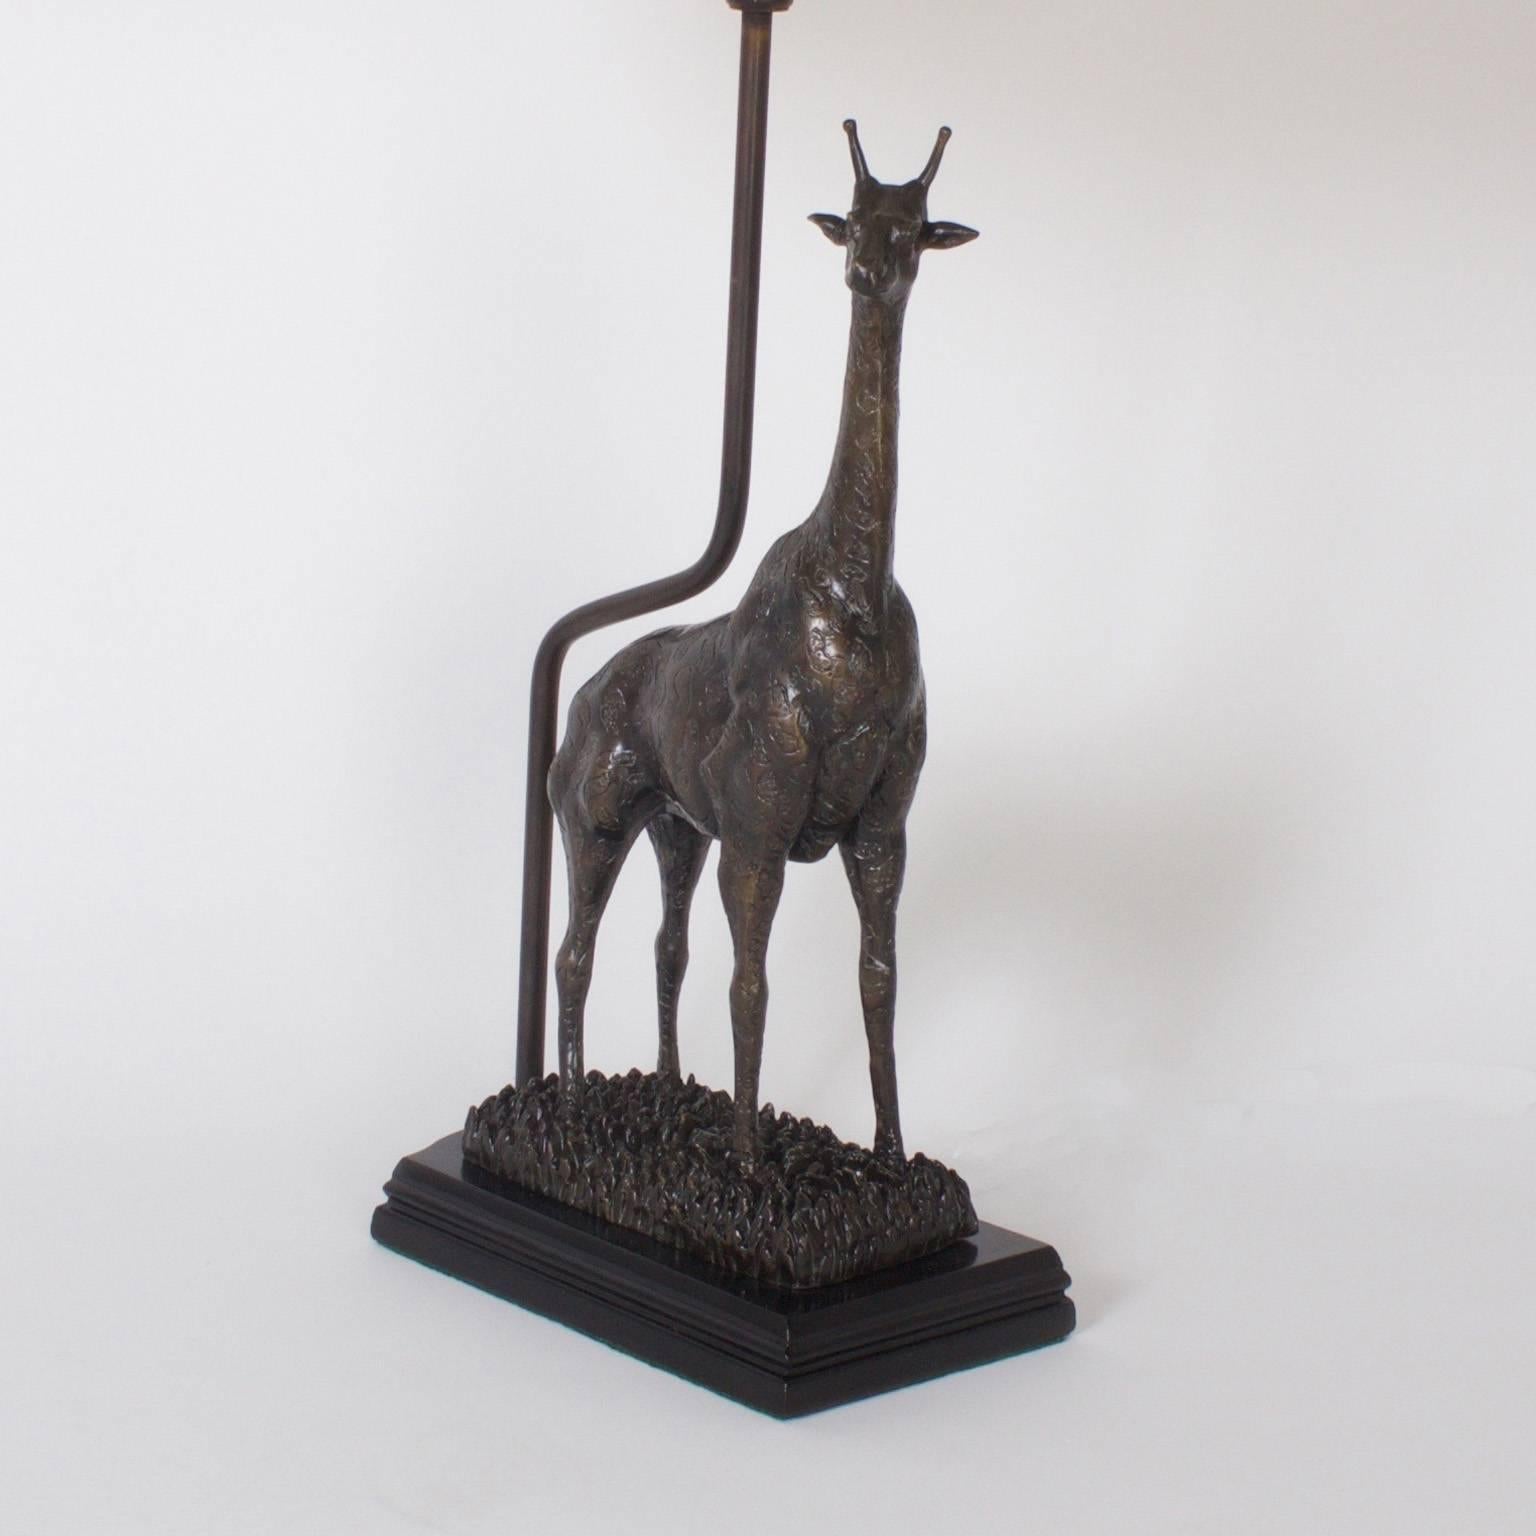 Ein hübsches Paar Giraffen-Tischlampen, die die Kraft und Anmut dieser neugierigen Tiere darstellen. Handgefertigt in der Mitte des Jahrhunderts mit Bronze und präsentiert auf ebonisiert Basen. Diese Lampen überqueren viele Stil- und Zeitlinien mit